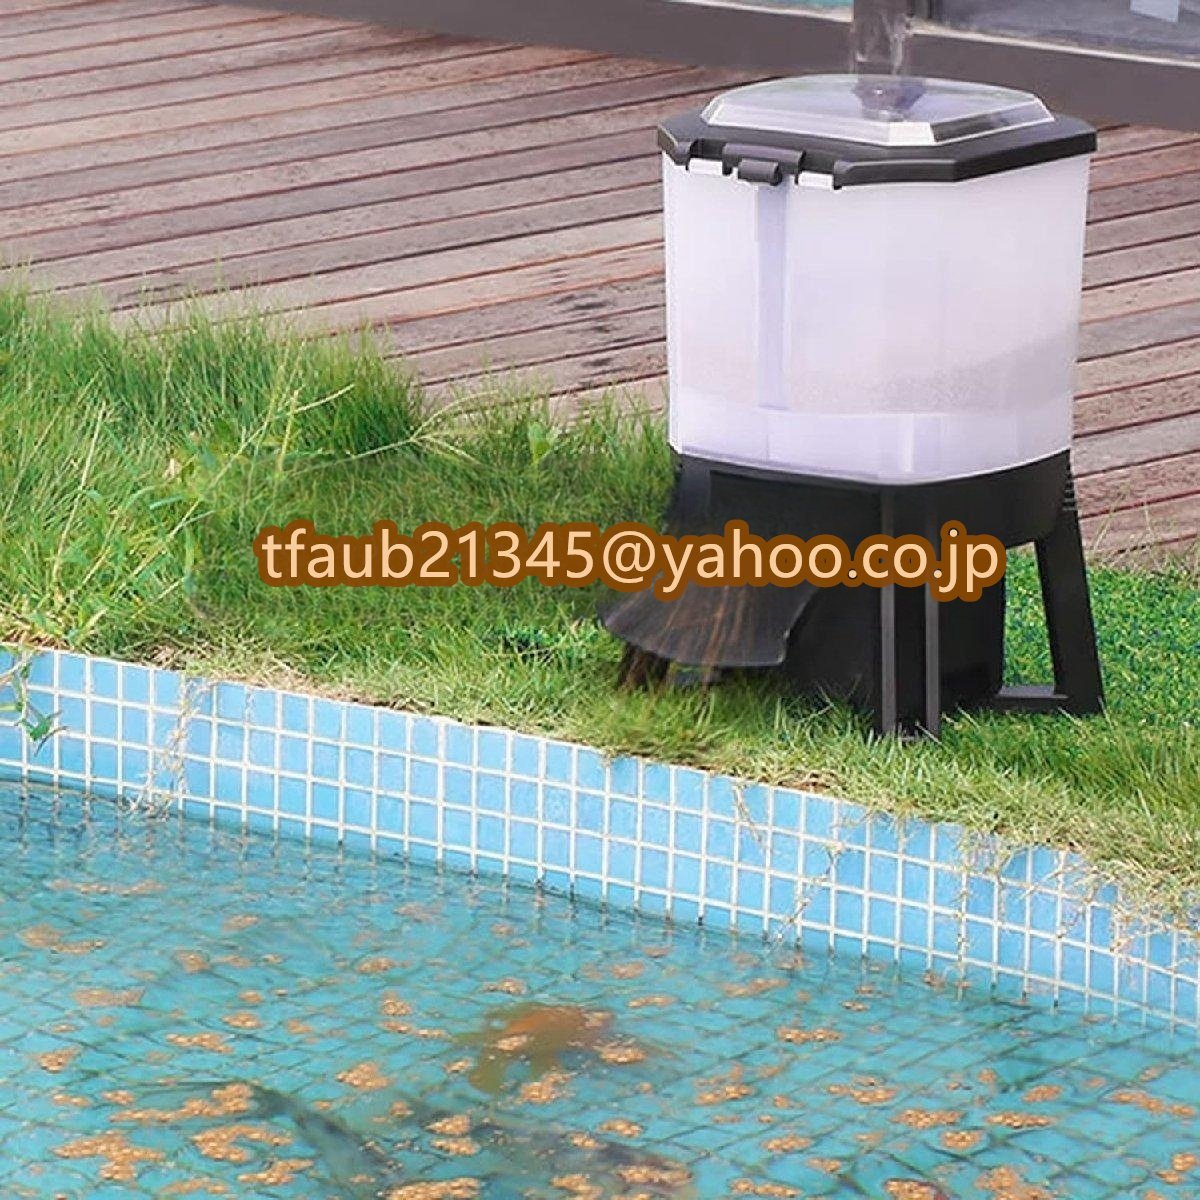 魚自動給餌器 ソーラー 屋内屋外魚のいる池用 6L スマートタイマー 120°分散給餌設計 LEDディスプレイ 簡単な操作